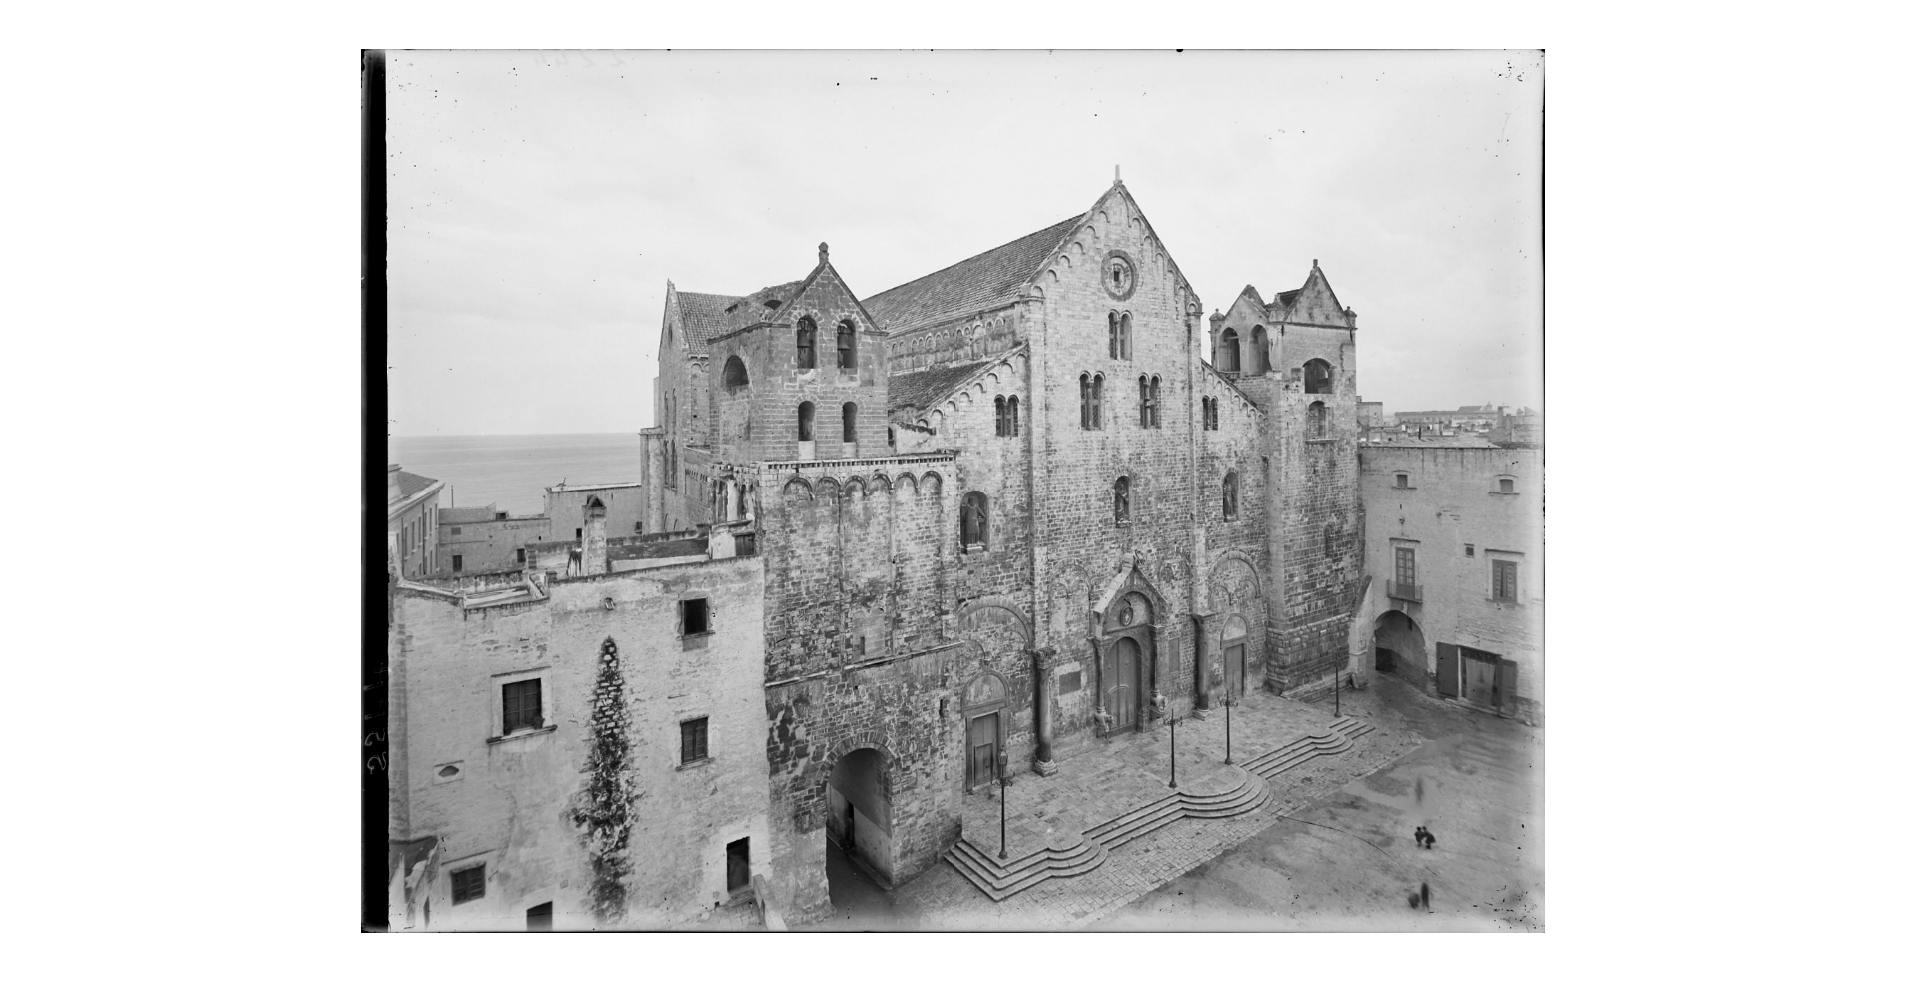 Fotografo non identificato, Bari - Basilica di S. Nicola, 1908, gelatina ai sali d'argento/vetro, E002244